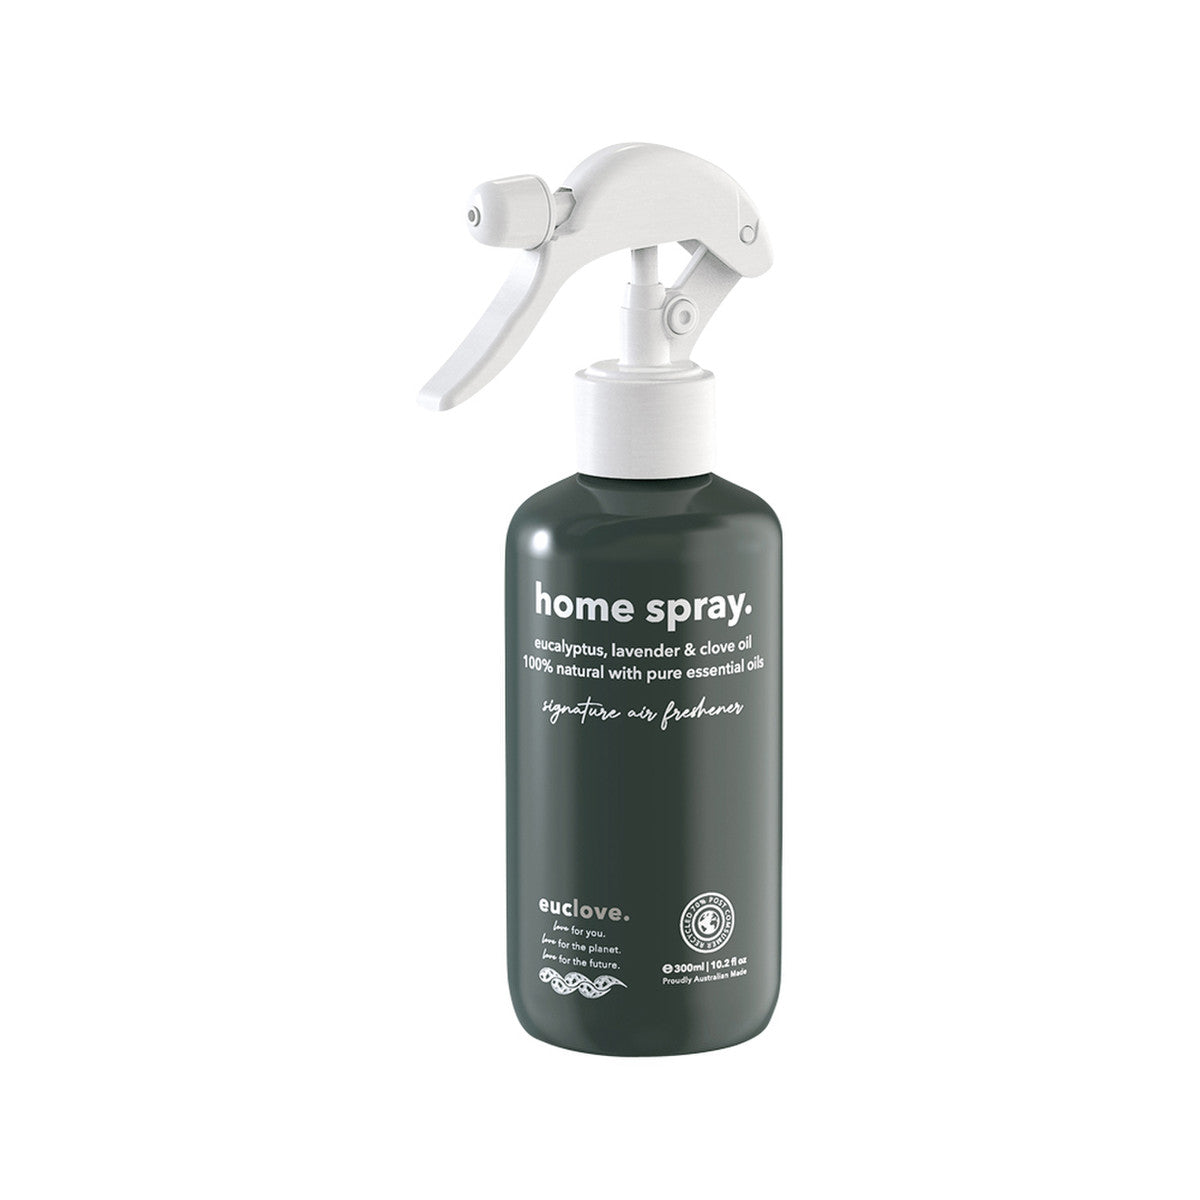 Euclove - Home Spray Signature Blend 500ml Spray